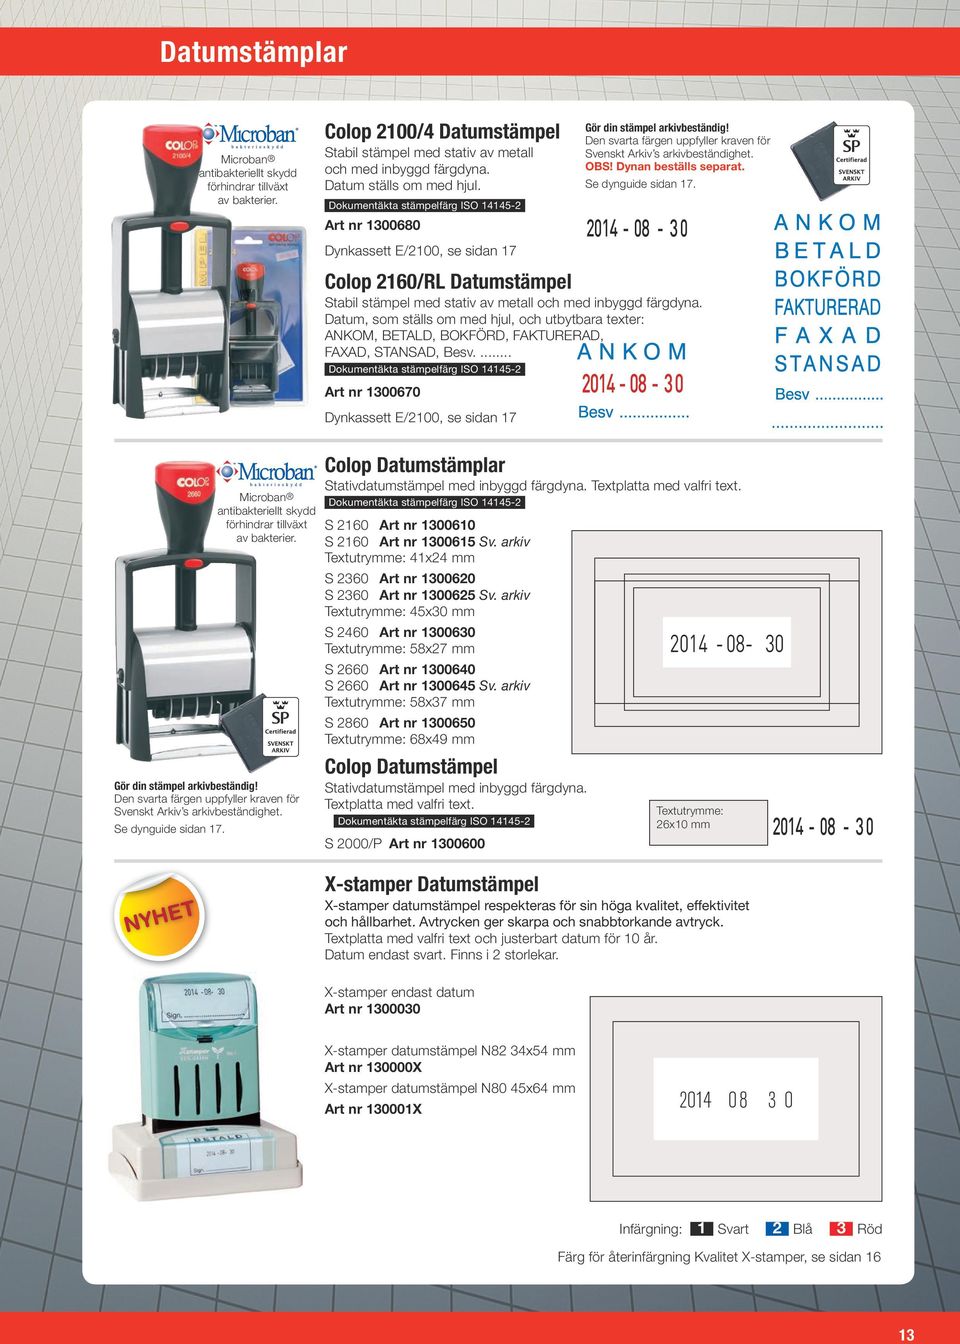 2014-08 - 3 0 rt nr 1300680 Dynkassett E/2100, se sidan 17 Colop 2160/RL Datumstämpel Stabil stämpel med stativ av metall och med inbyggd färgdyna.